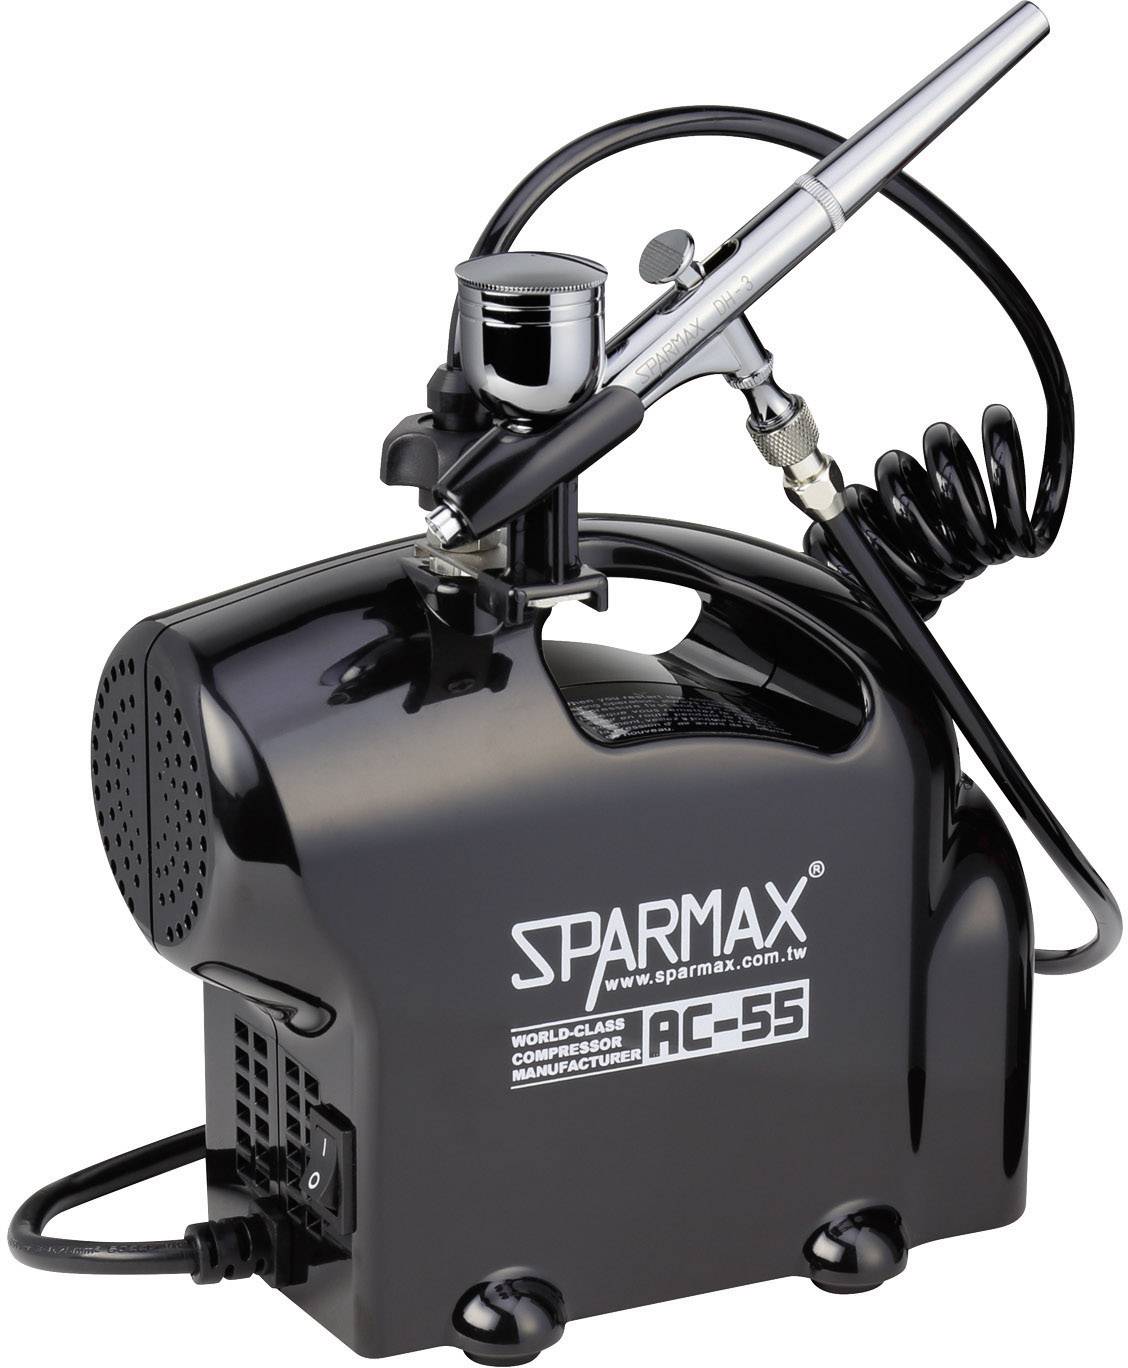 Sparmax SK-55 SK-55 kit Compressor Double action | Conrad.com